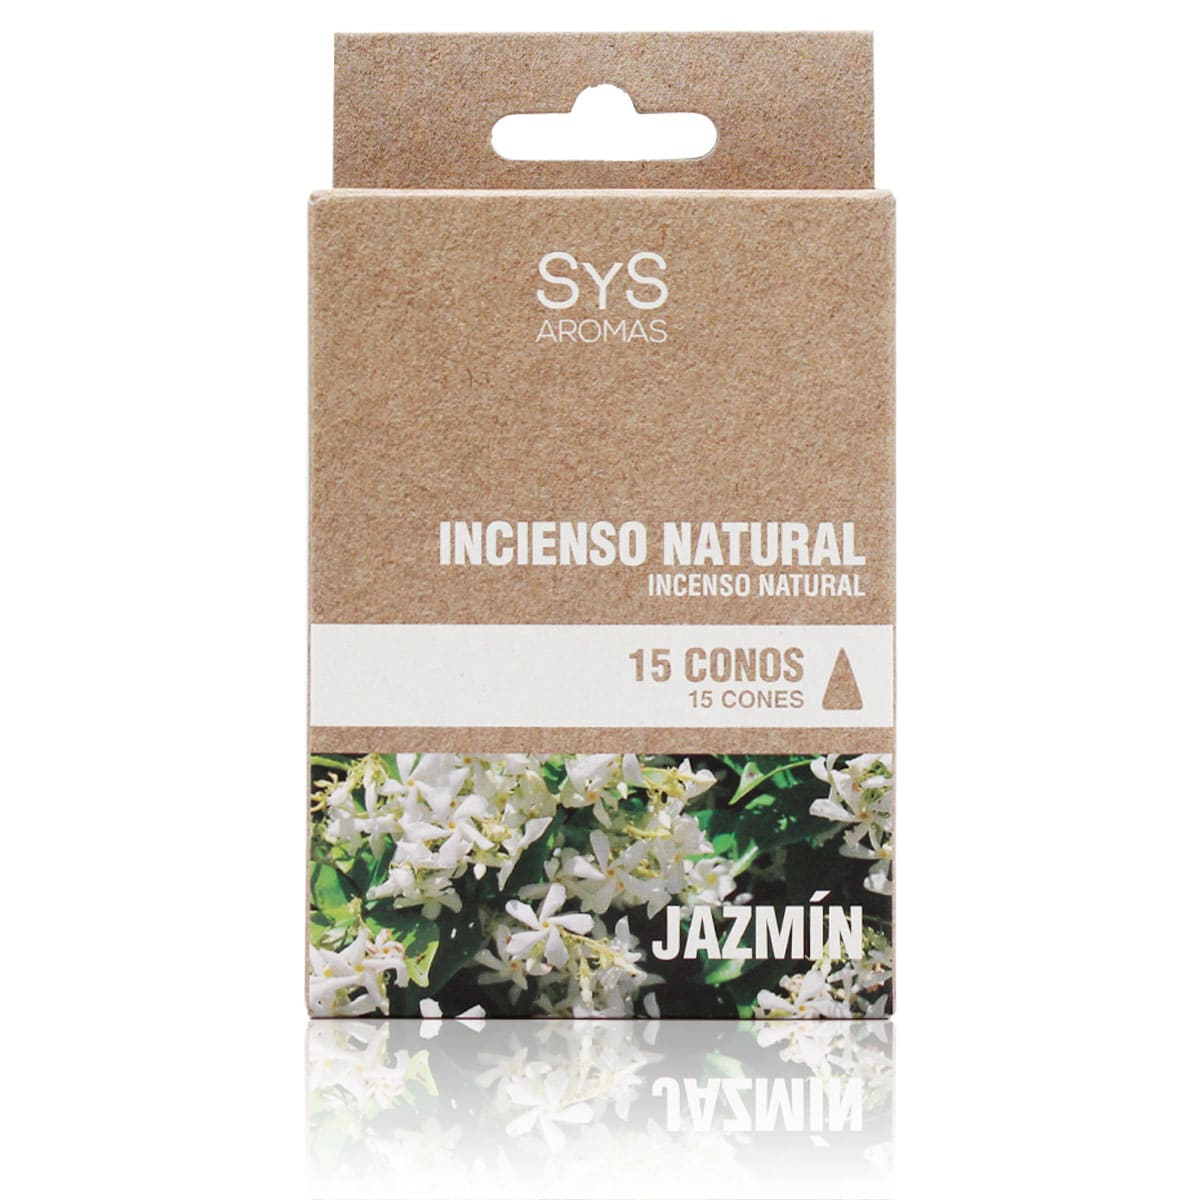 Buy Natural Jasmine Inciense 15 Cones SYS Aromas